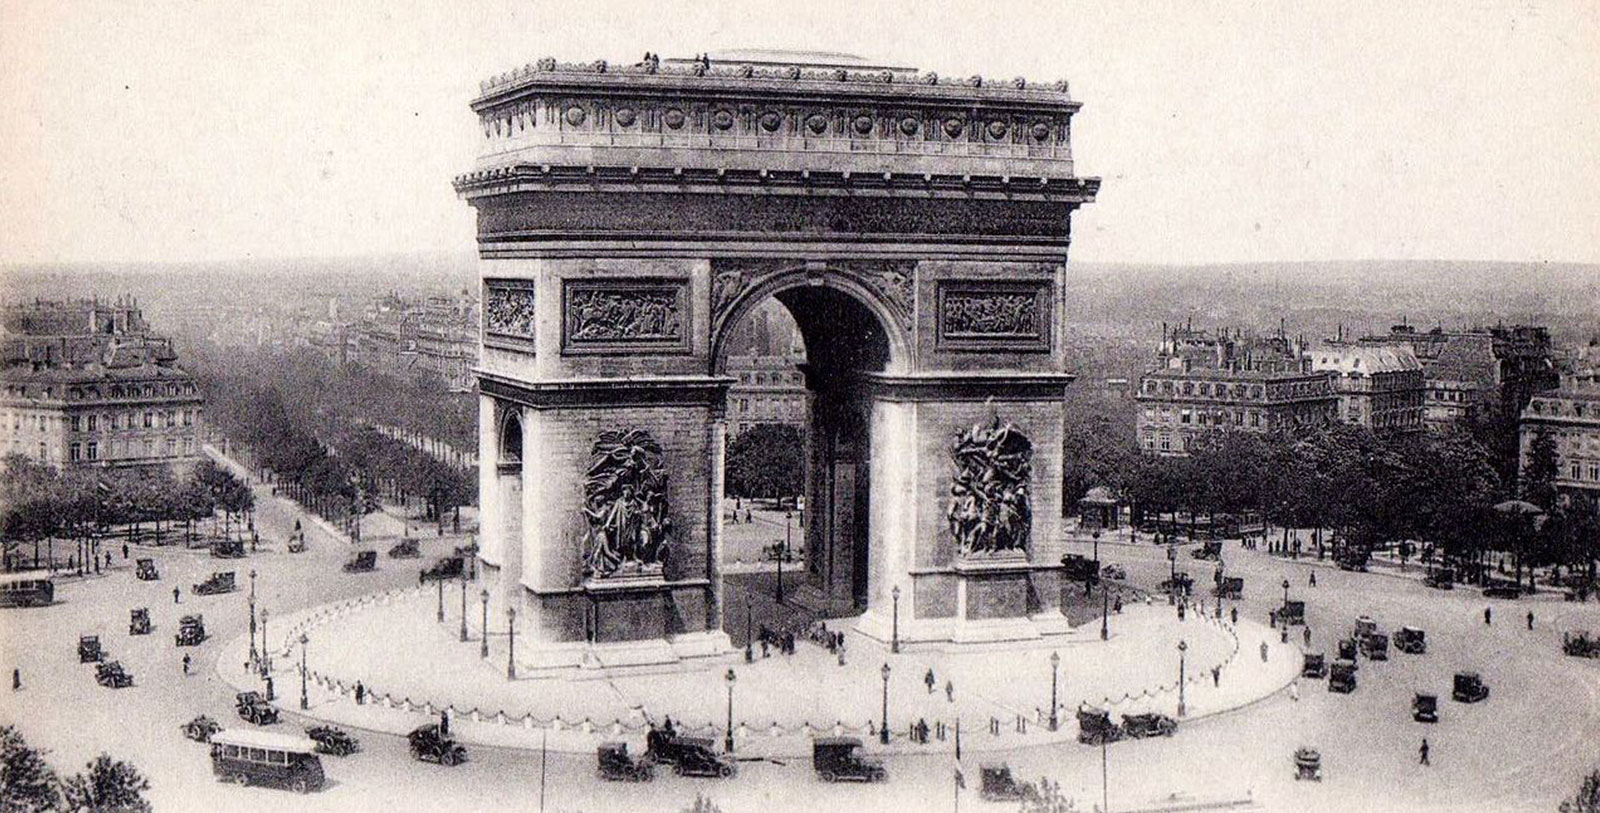 Discover the remarkable architectural aesthetics that define the Sofitel Paris Arc de Triomphe.